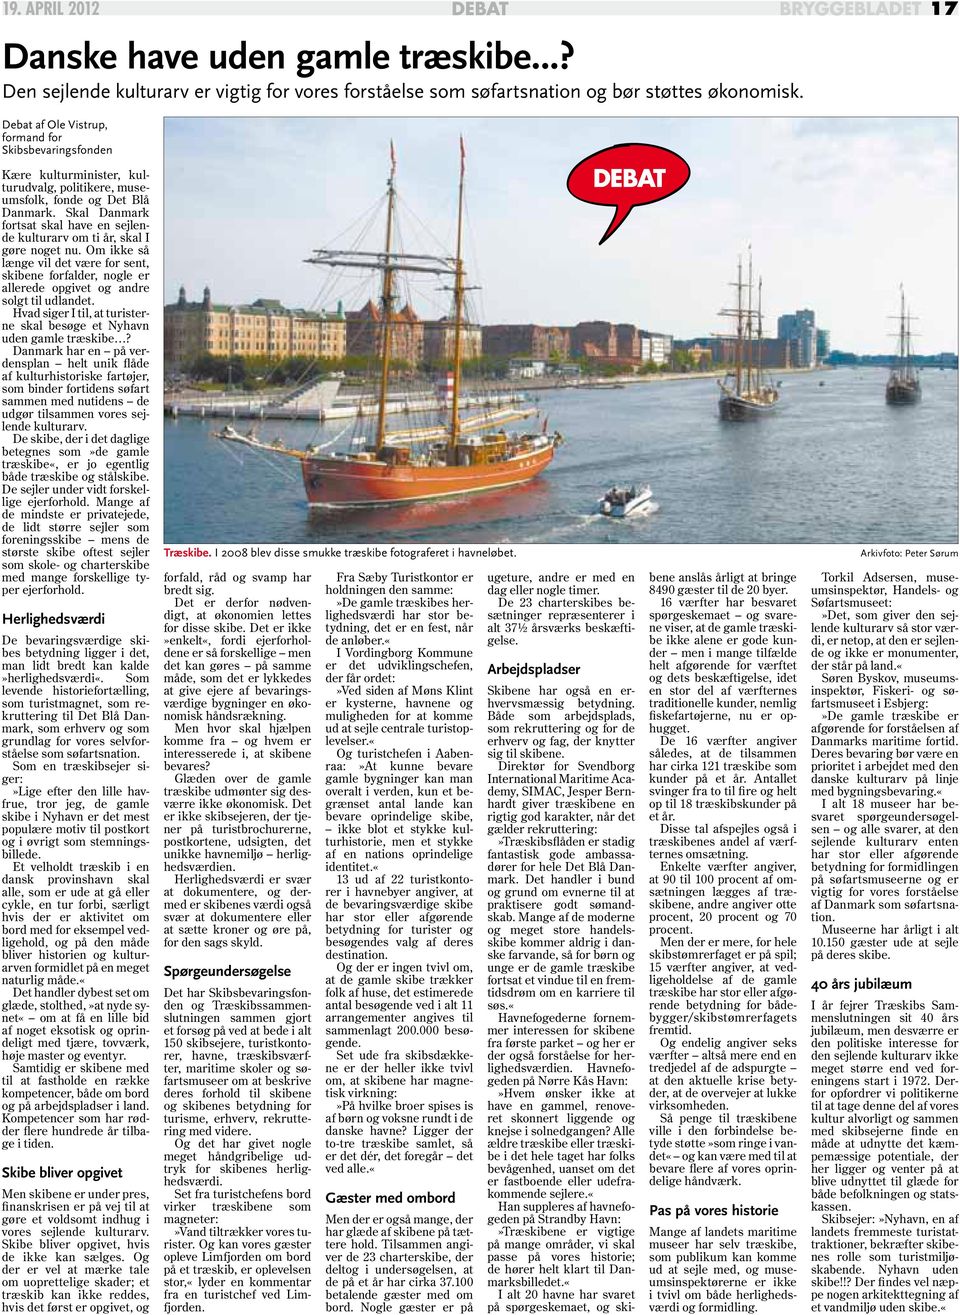 Skal Danmark fortsat skal have en sejlende kulturarv om ti år, skal I gøre noget nu. Om ikke så længe vil det være for sent, skibene forfalder, nogle er allerede opgivet og andre solgt til udlandet.